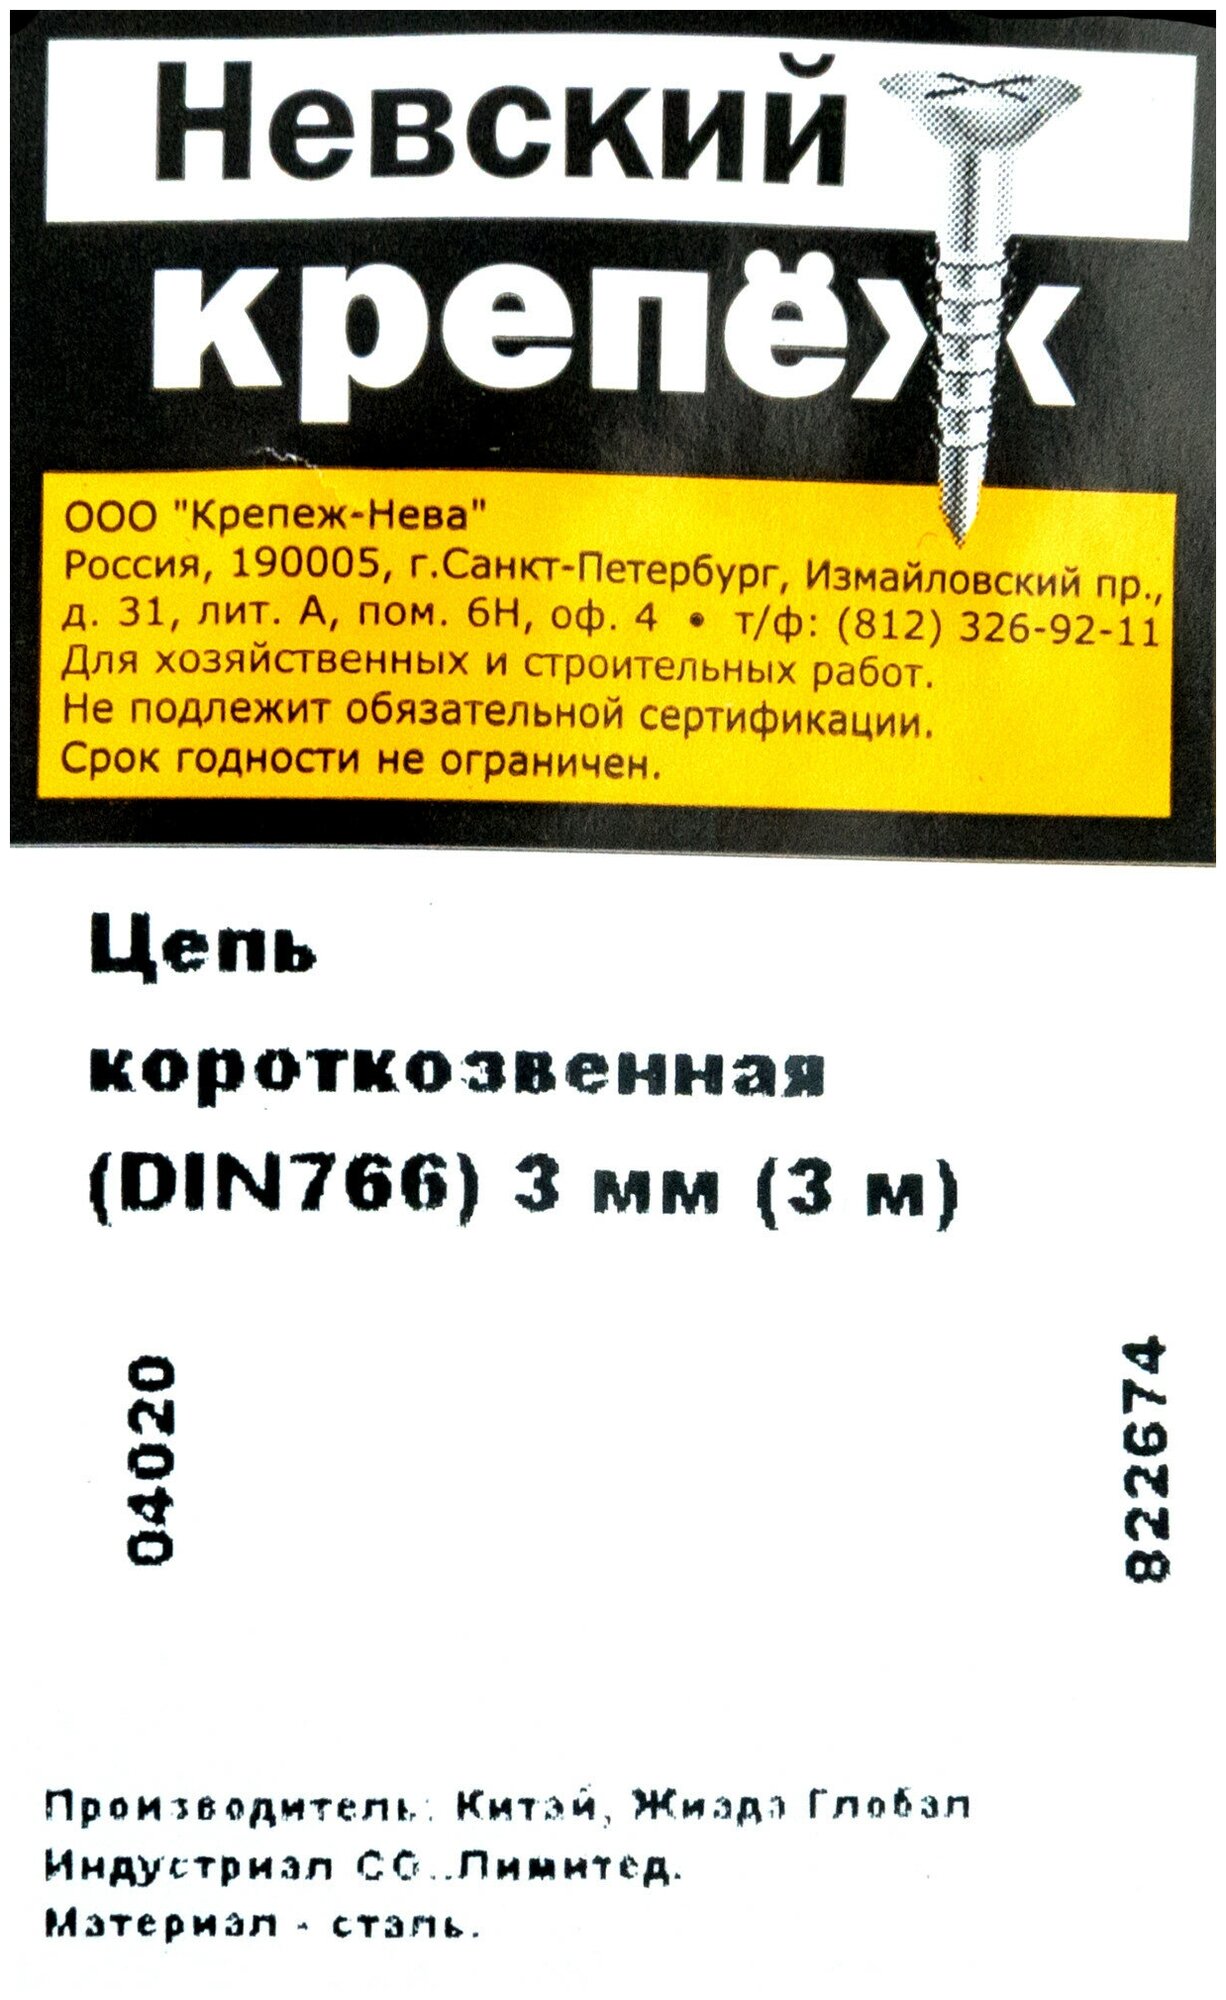 Цепь DIN 766, кор. звено, 3 мм, цинк, 3 м - фотография № 5